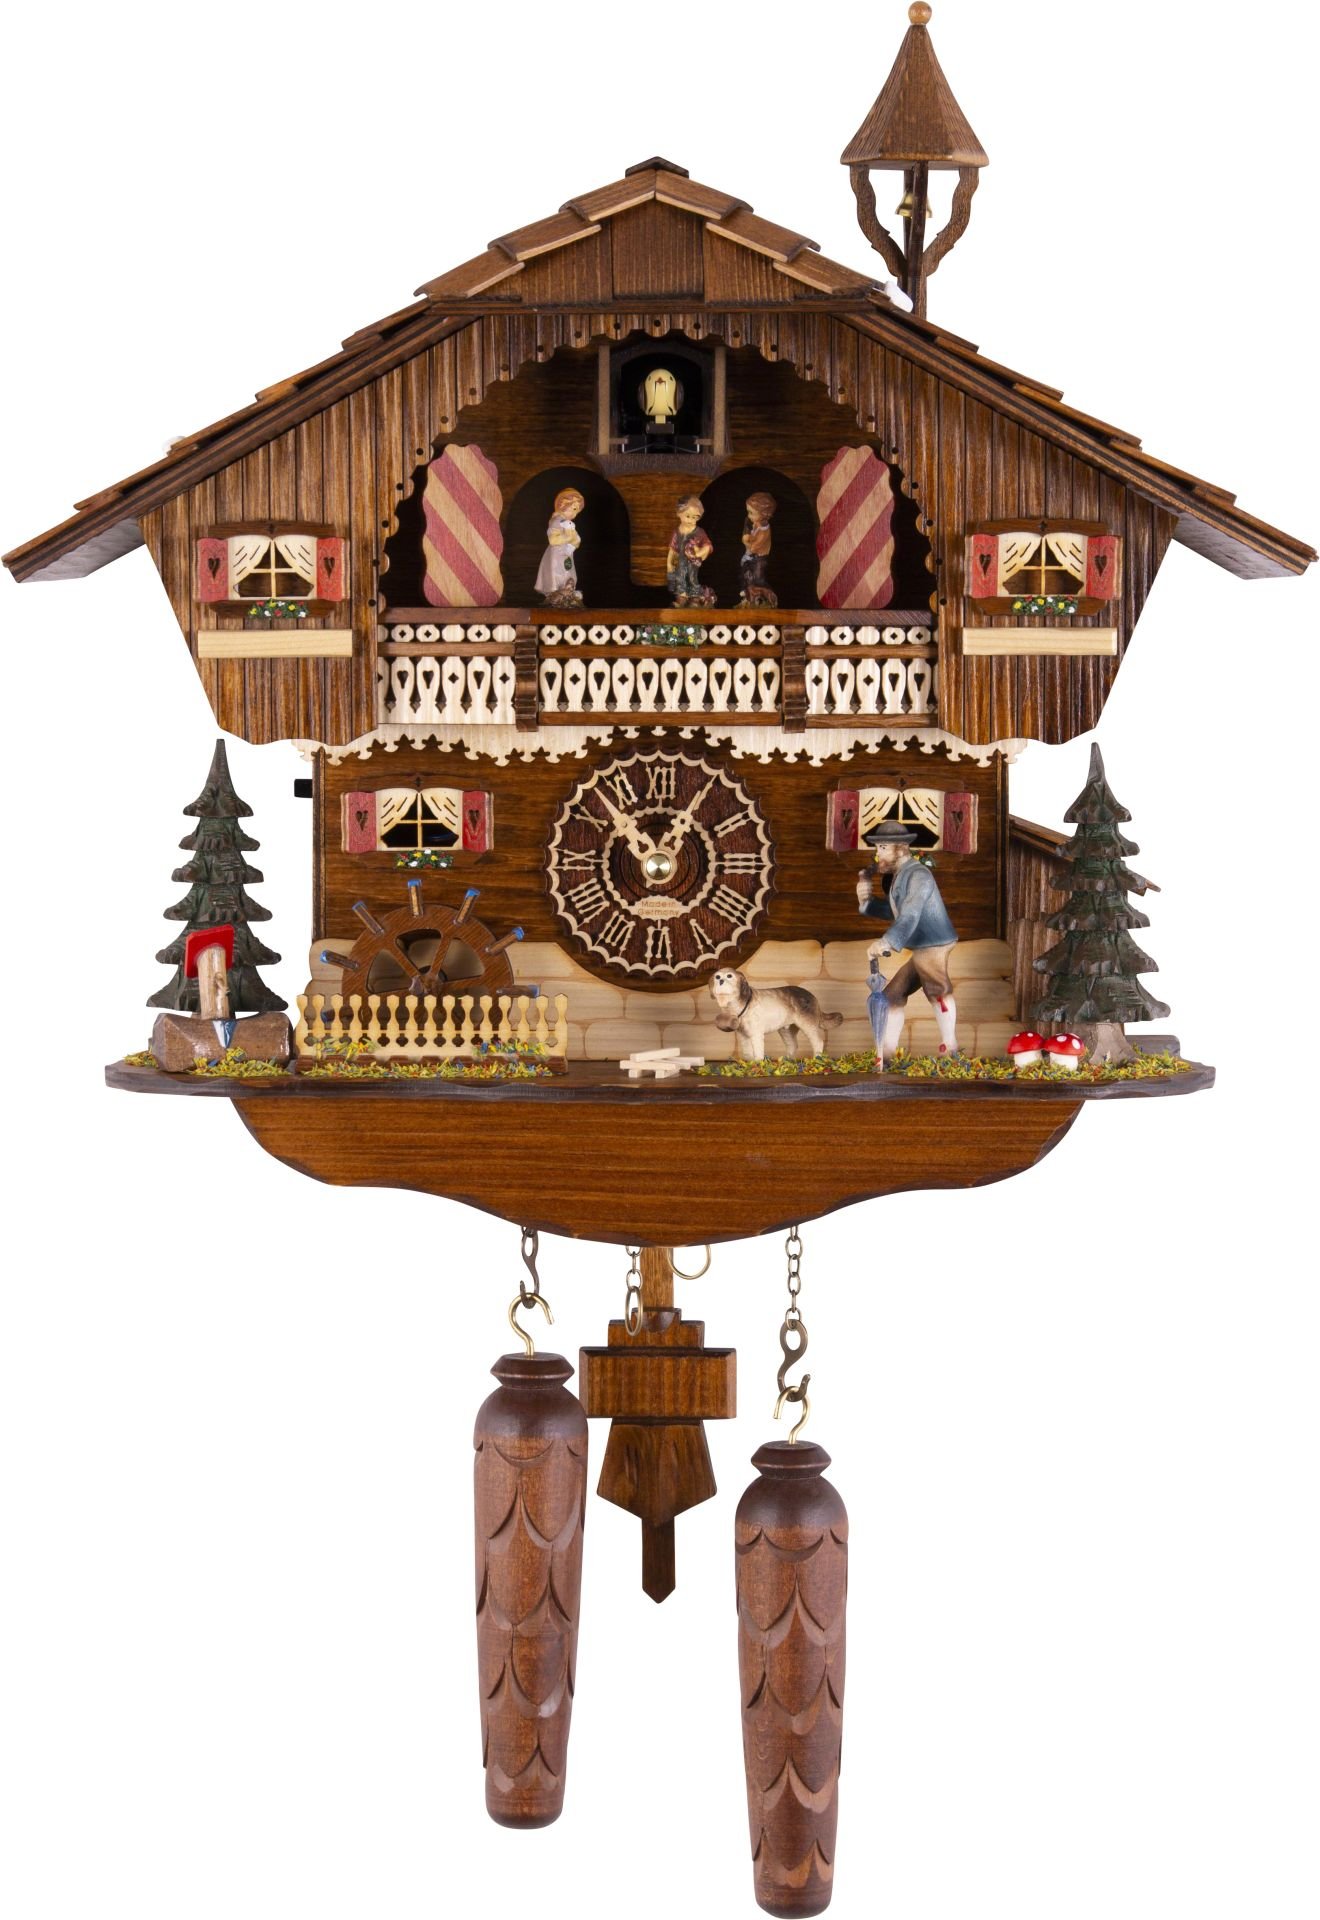 Kuckucksuhr Chalet-Stil Quarz-Uhrwerk 35cm von Trenkle Uhren